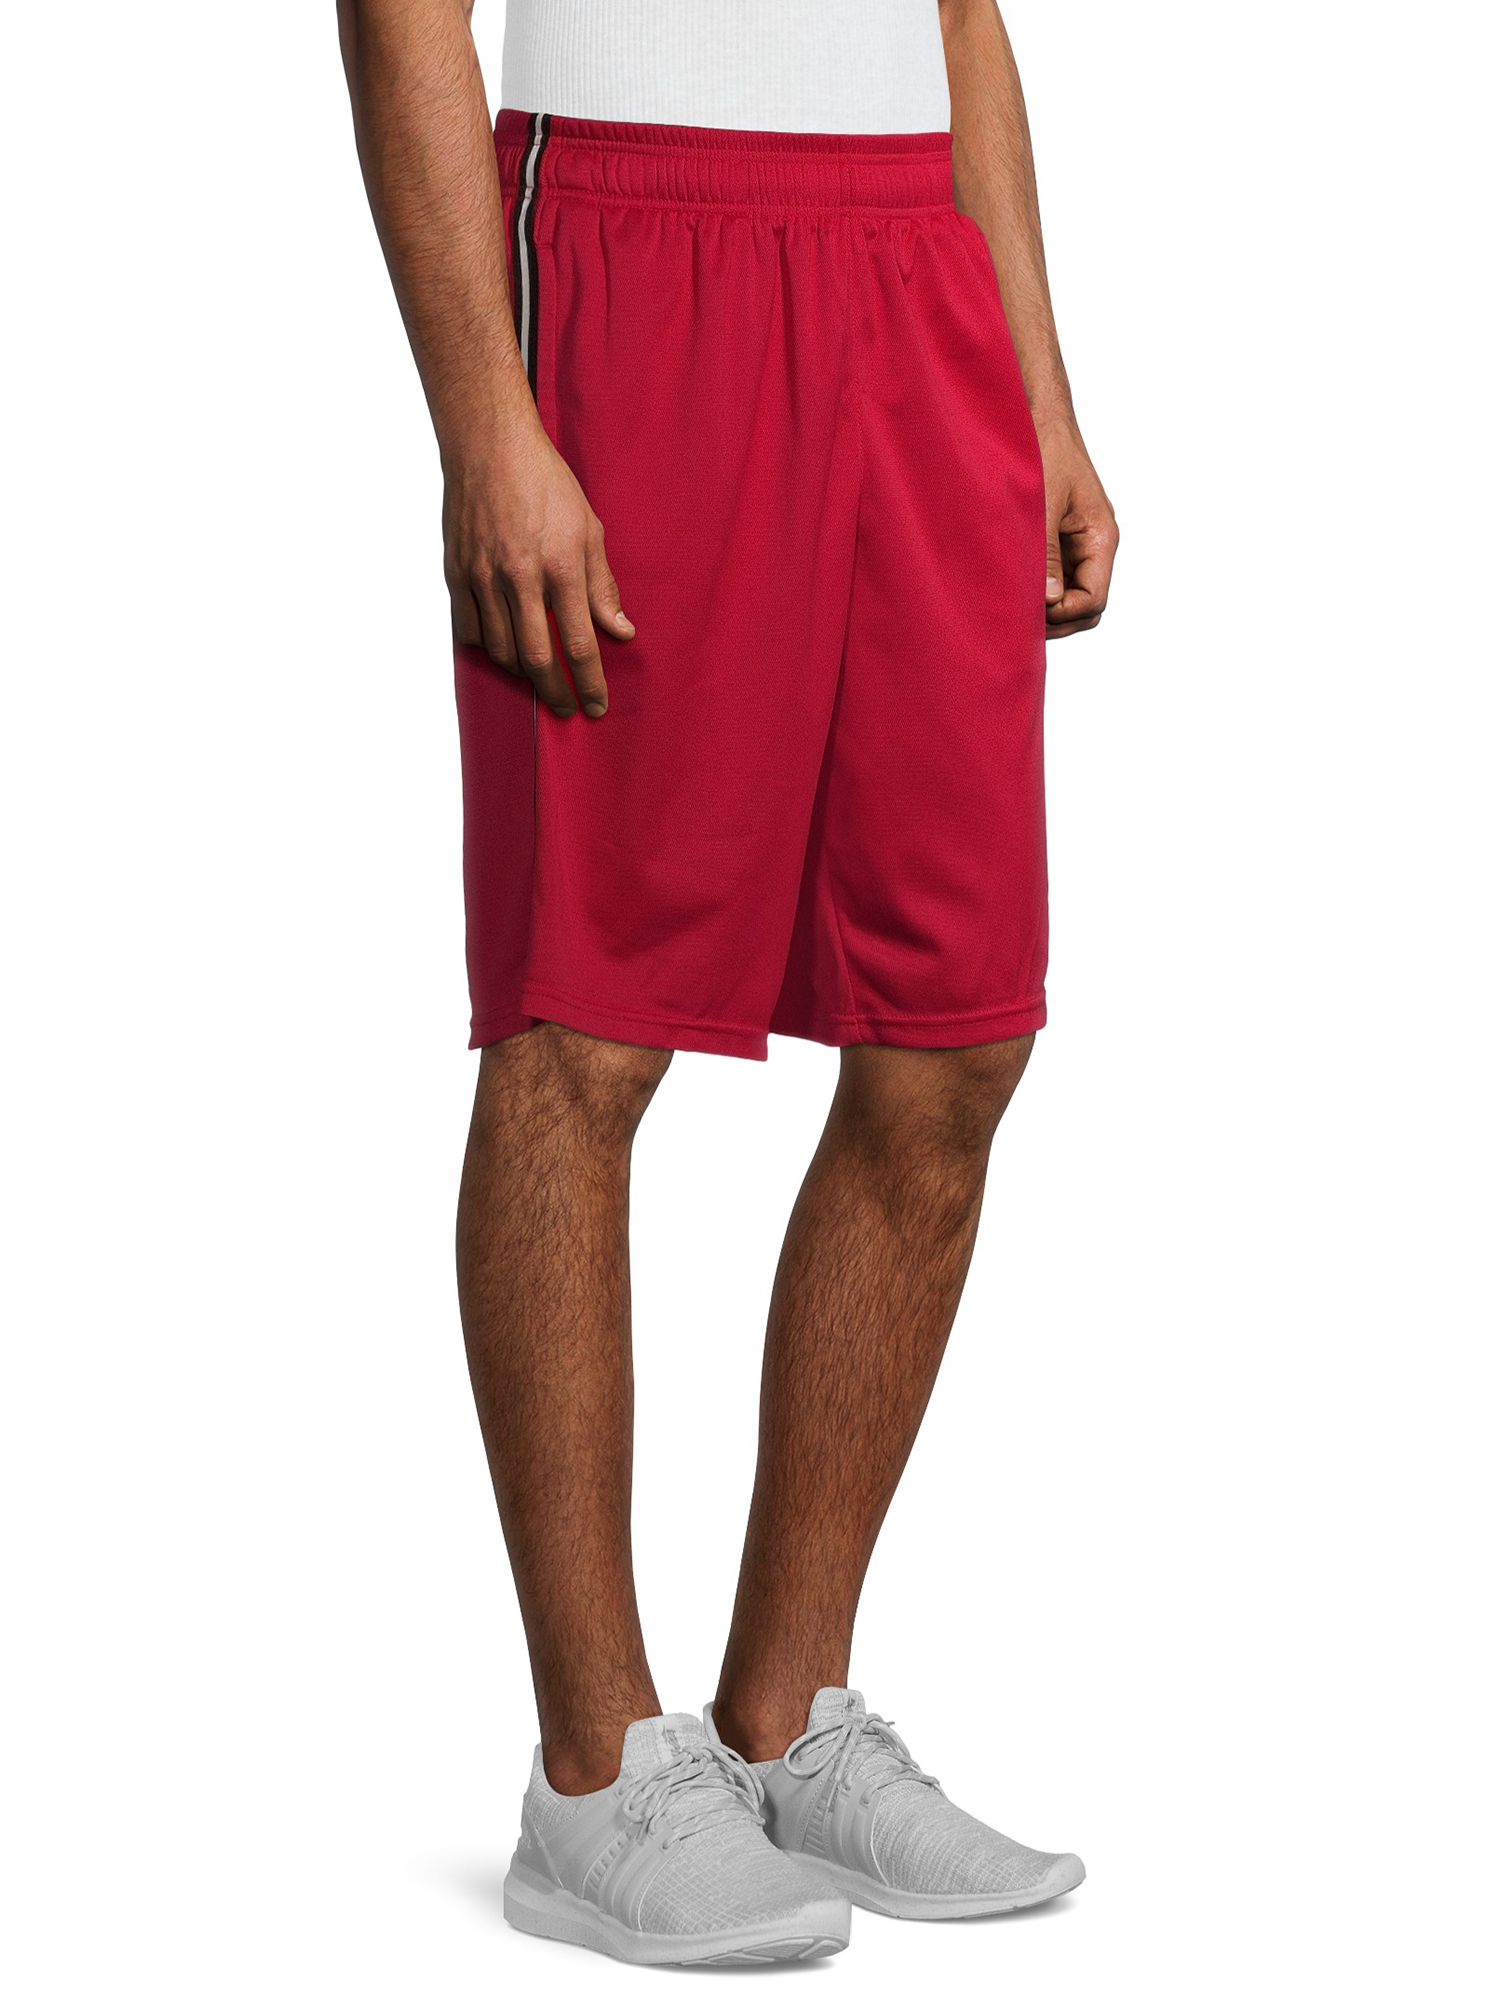 AL1VE Men's Pique Basketball Shorts - Walmart.com